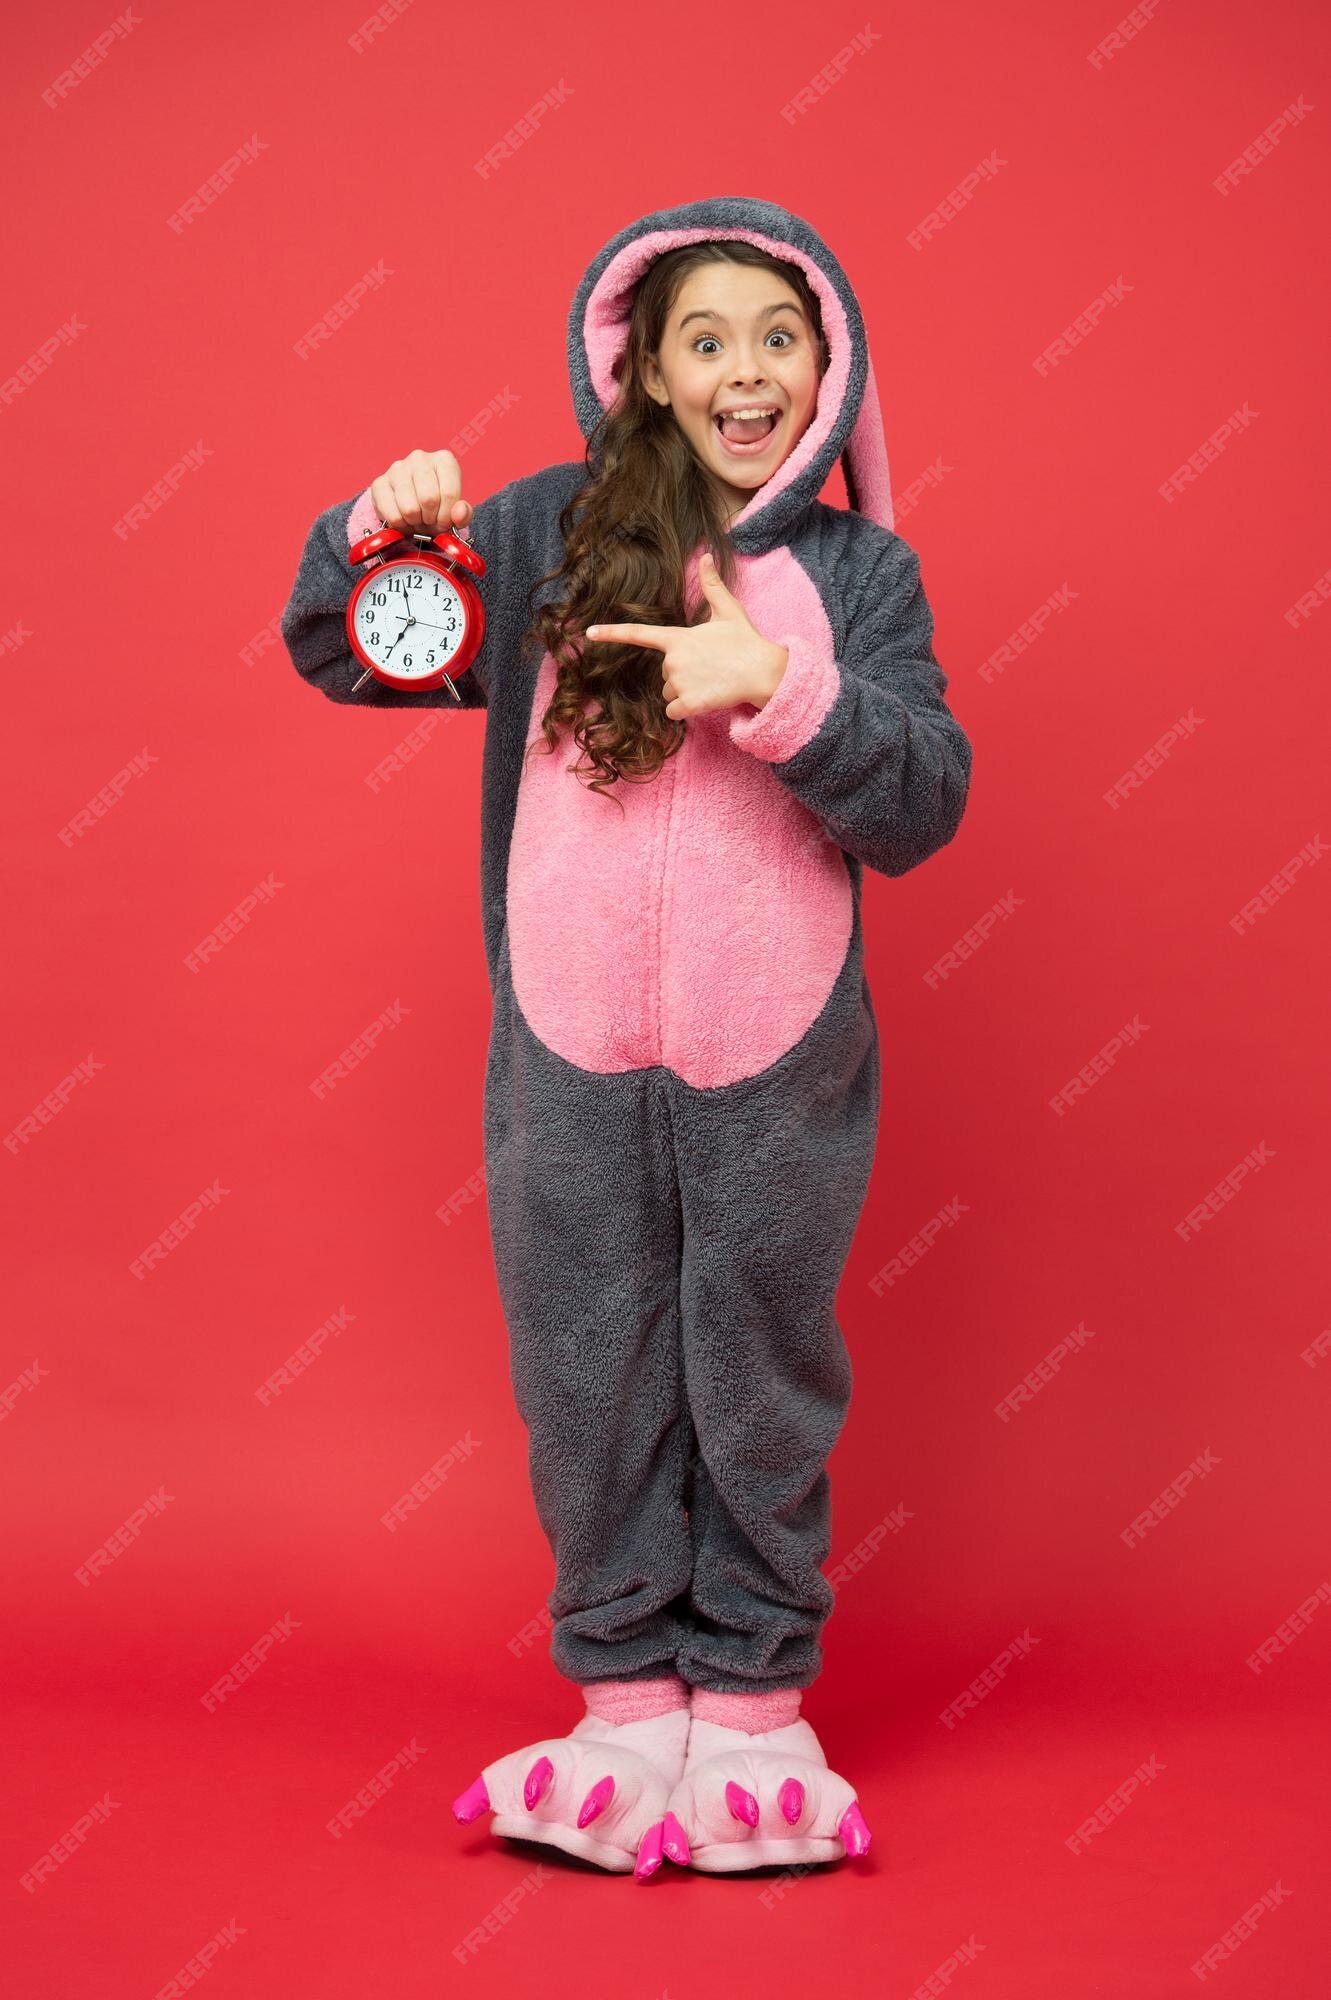 Contando el tiempo es fin de semana adorable conejita con reloj niña pequeña disfrazada de conejita niño en kigurumi de conejo pijama de conejita feliz descansa y relájate niño conejito fondo